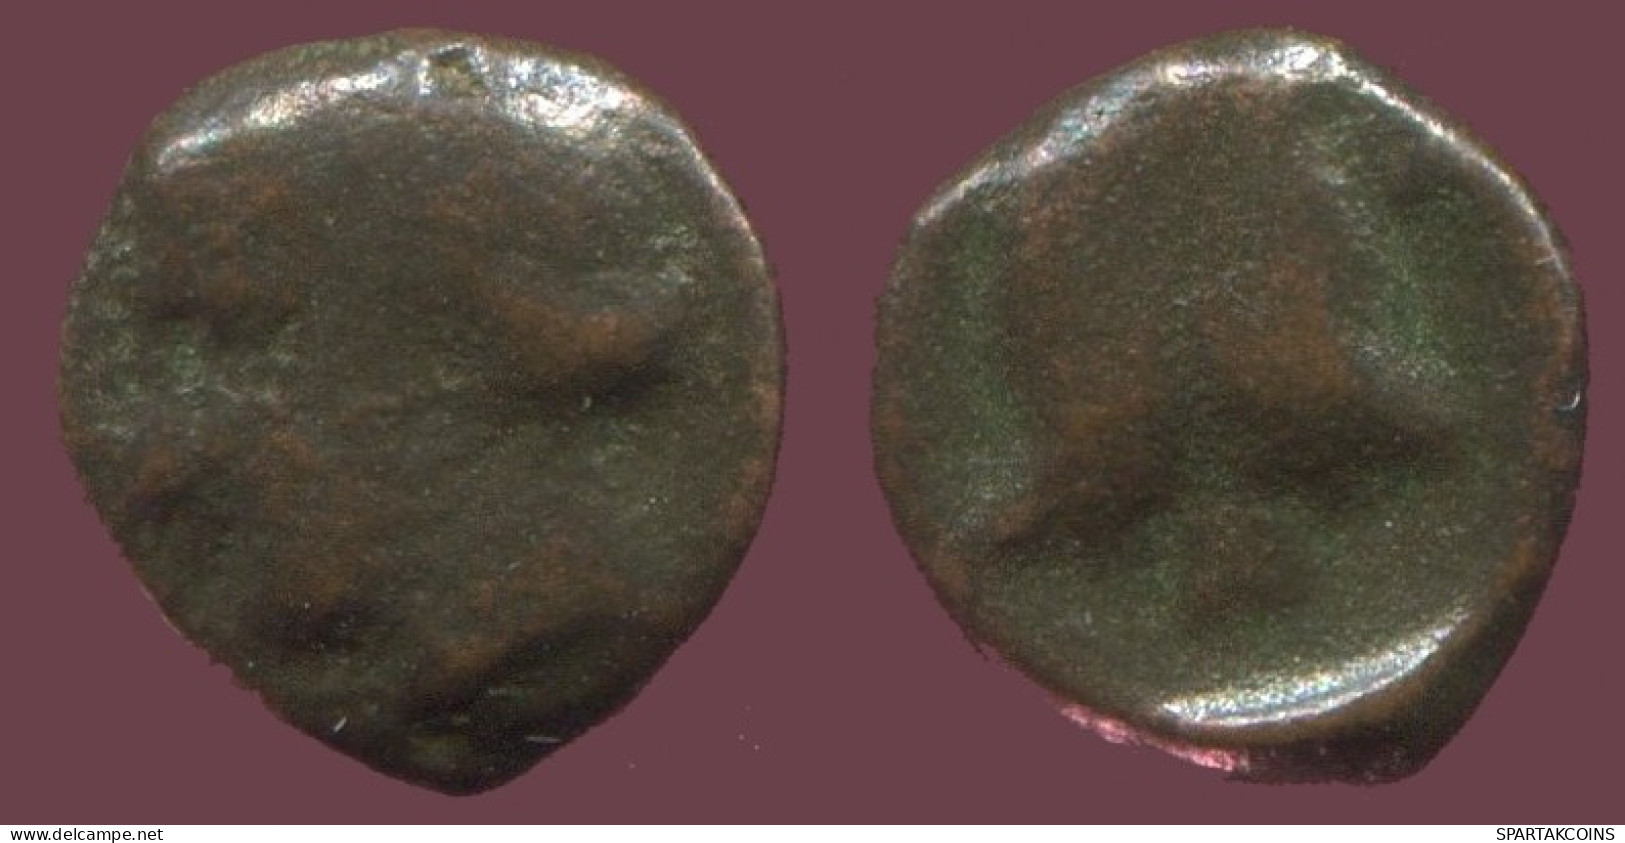 Antiguo Auténtico Original GRIEGO Moneda 0.4g/7mm #ANT1606.9.E.A - Griechische Münzen